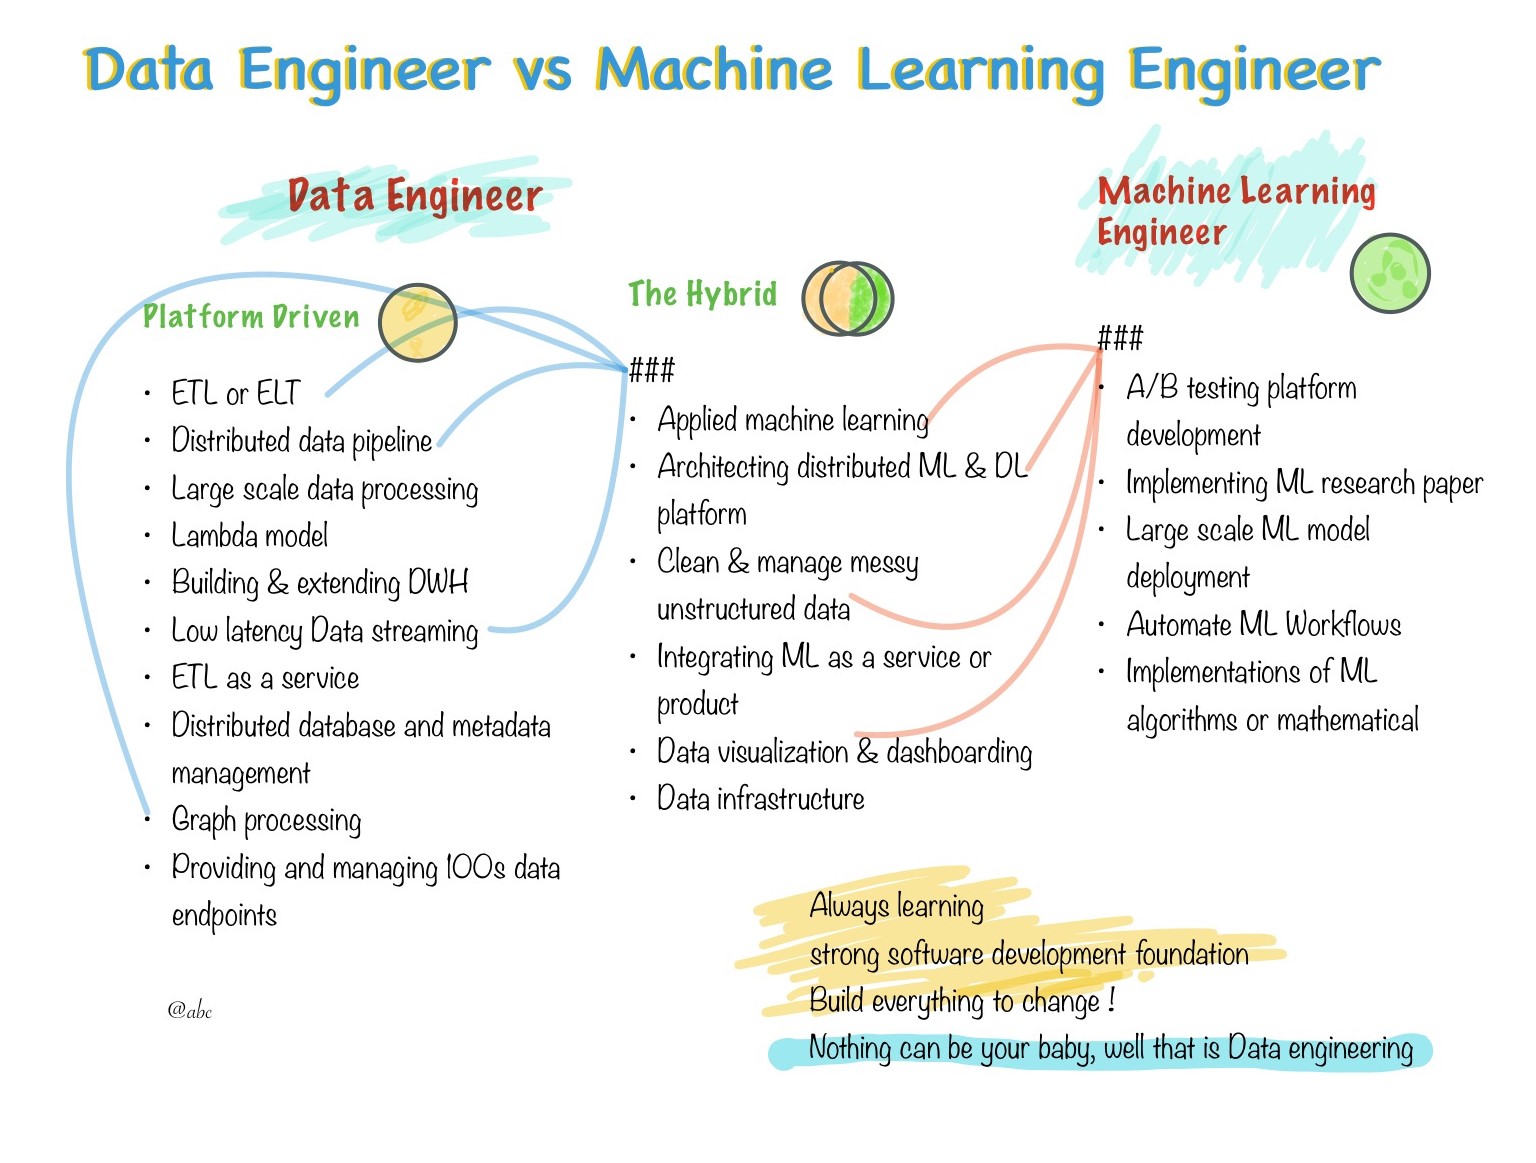 DataEngineering vs Machine Learning